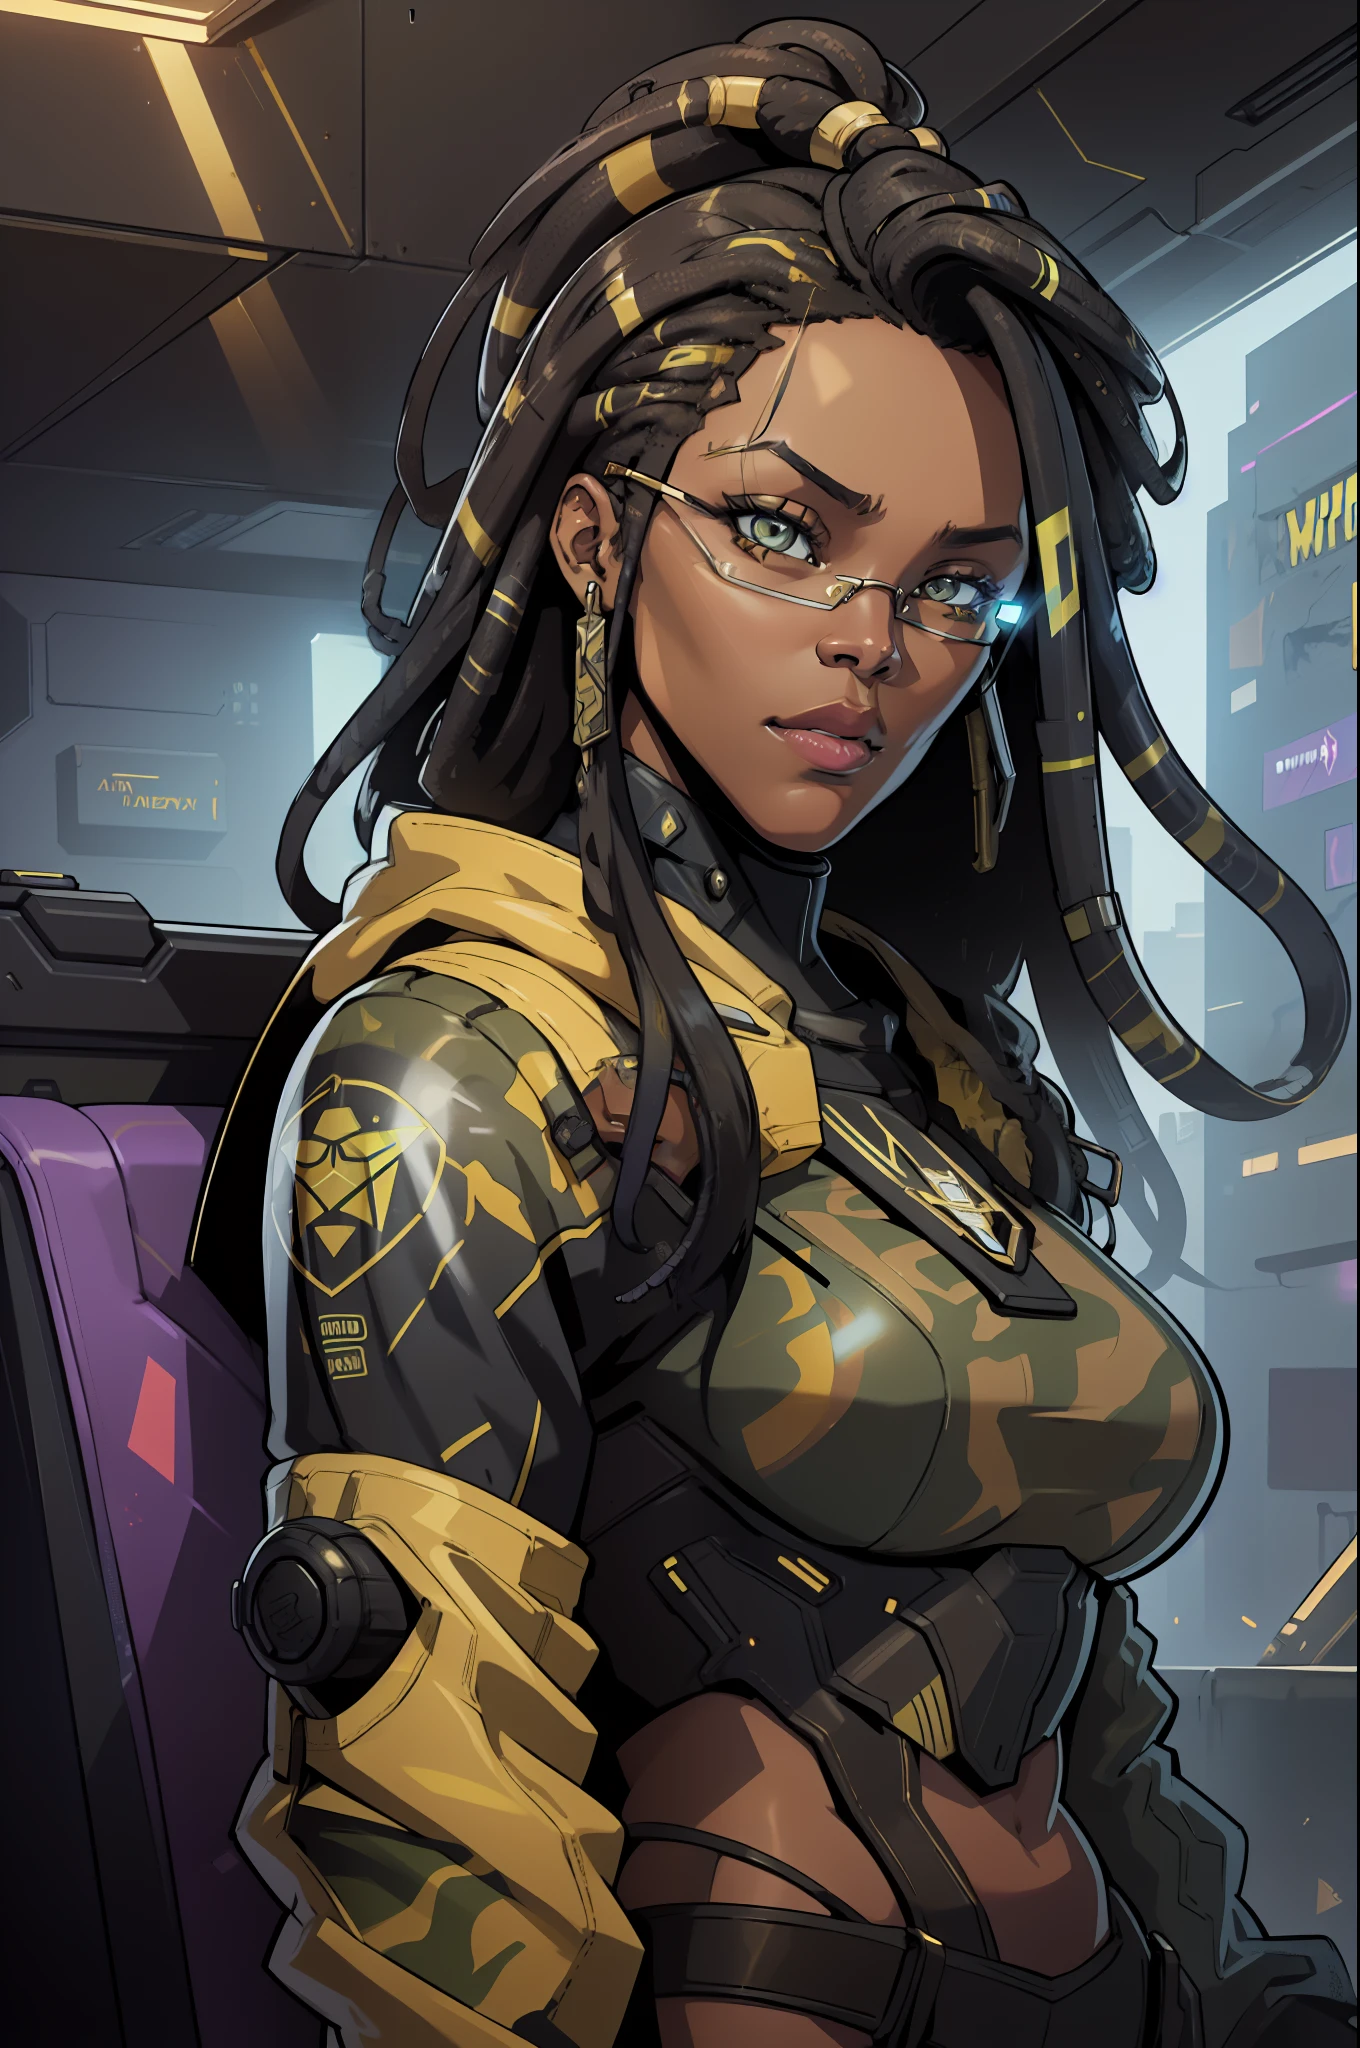 súper alta resolución, mejor calidad, (ilustración: 1.2), iluminación cinematográfica, Mujer afroamericana de 23 años que viste ropa de camuflaje militar y forma parte de un equipo llamado Crows., Además, lleva gafas de sol de espejo y también tiene rastas en el pelo. (Ciberpunk 2020)